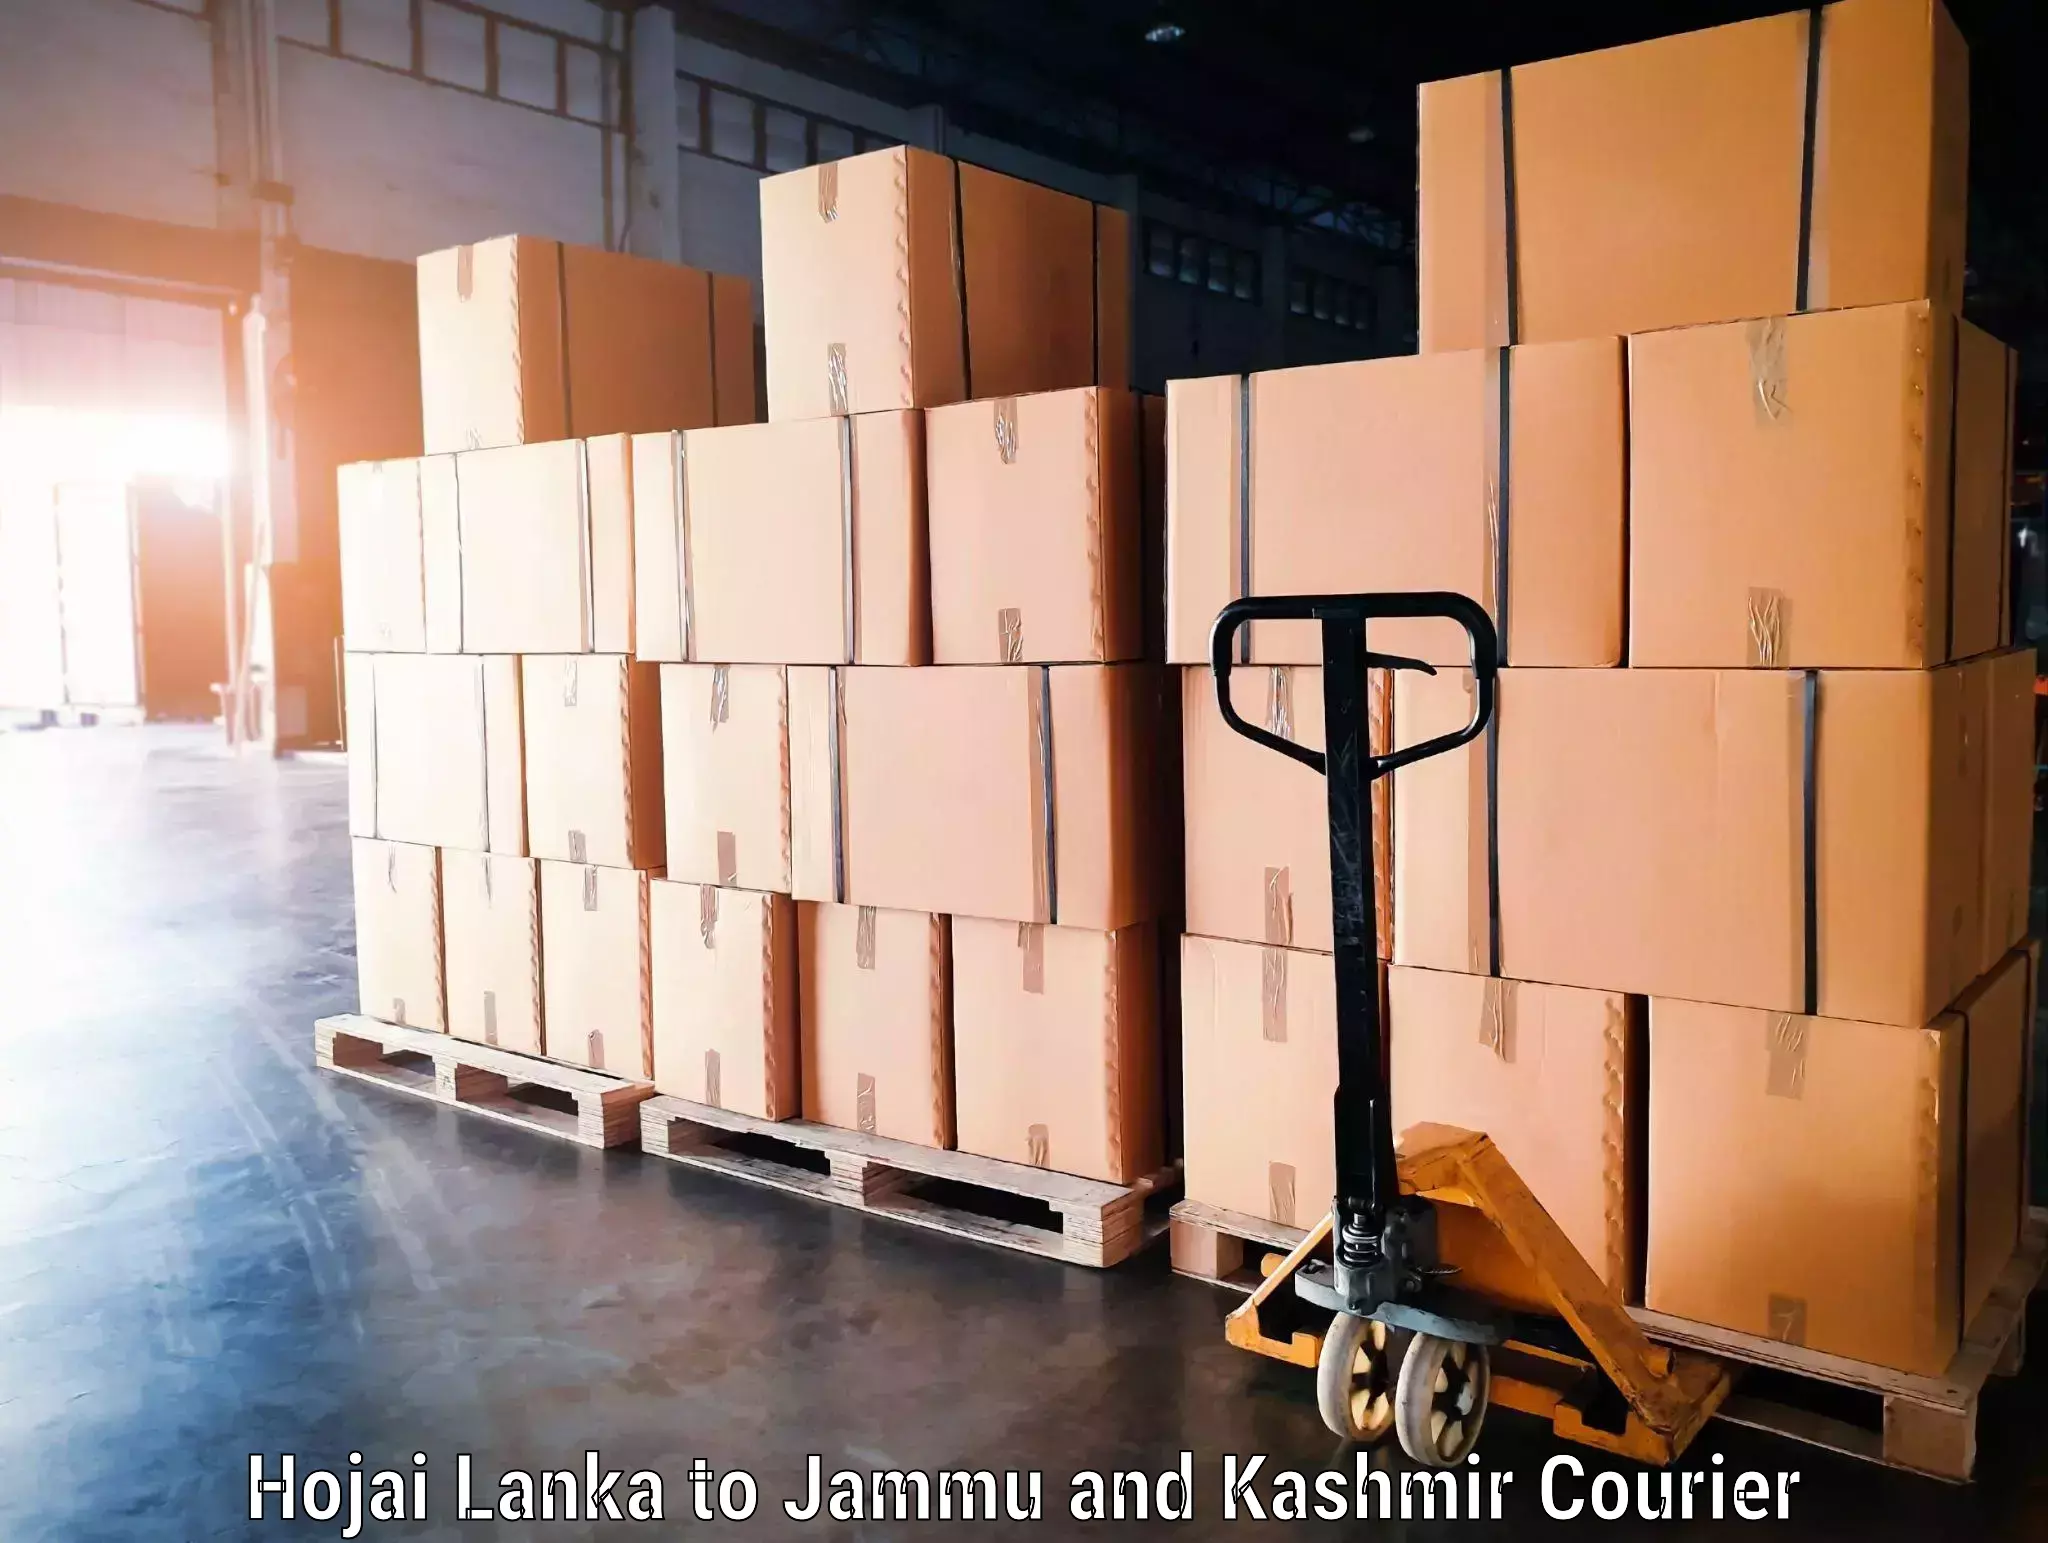 Luggage delivery network Hojai Lanka to Nagrota